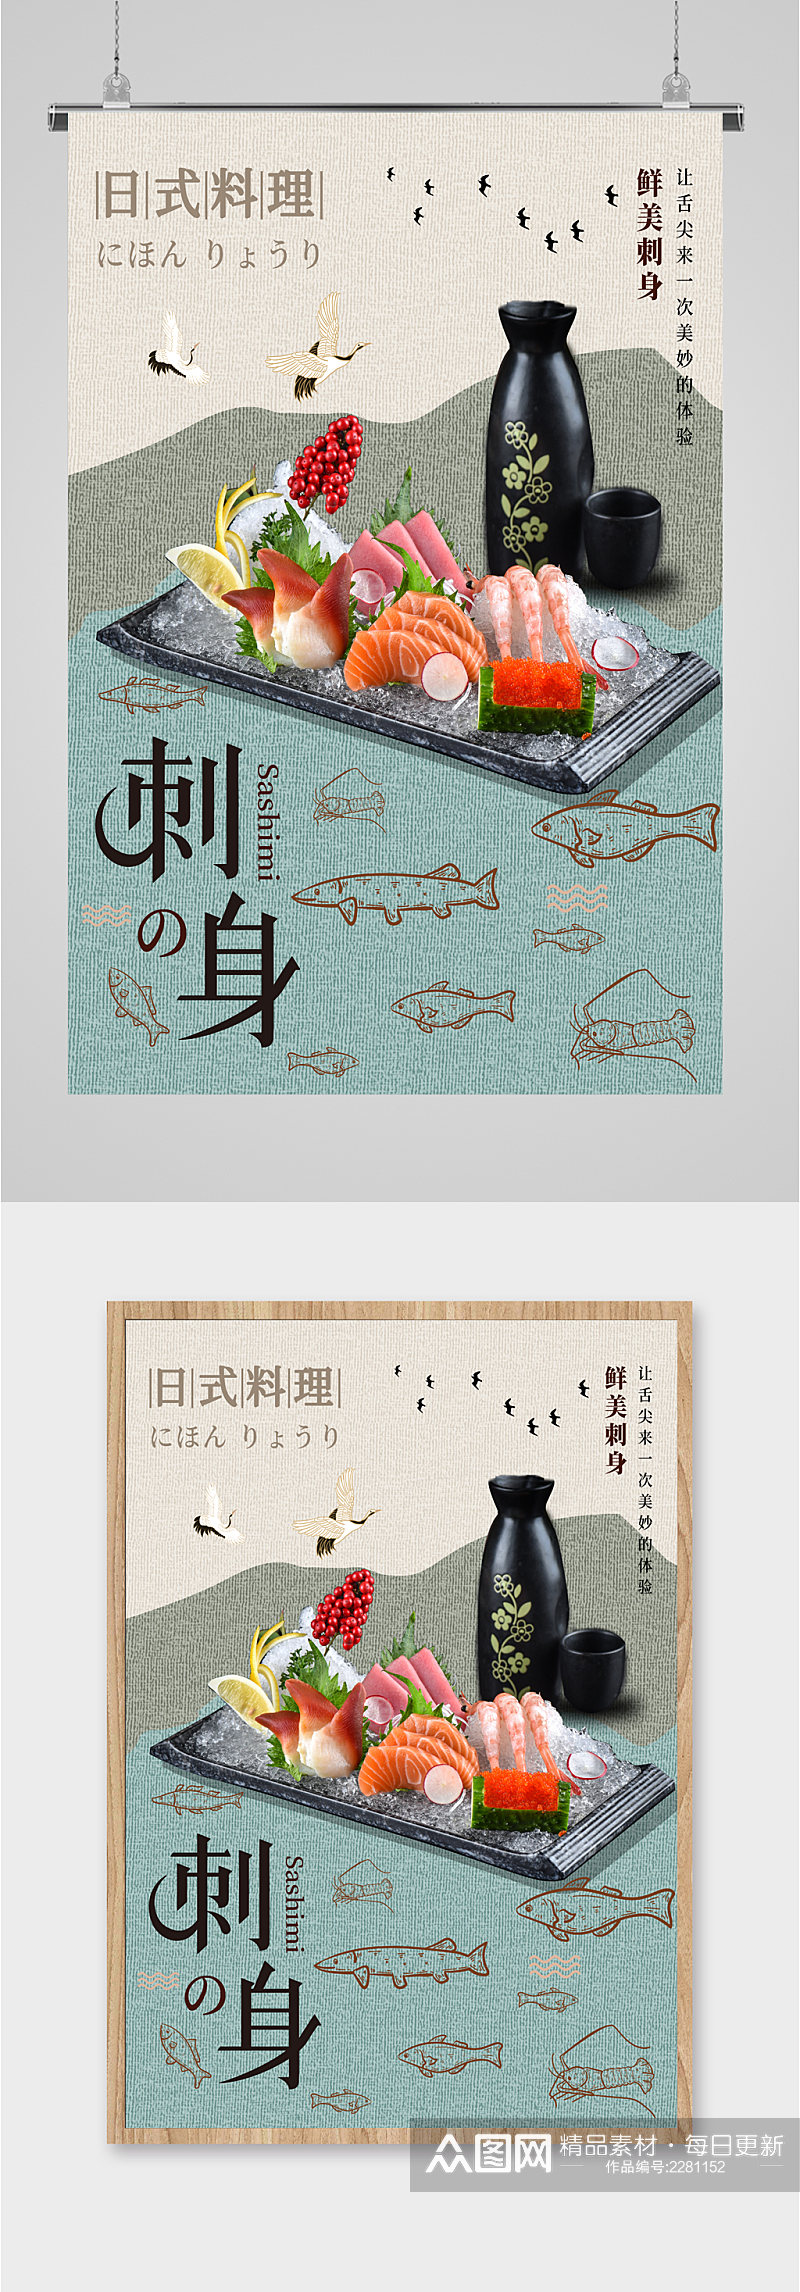 日式料理刺身海报素材